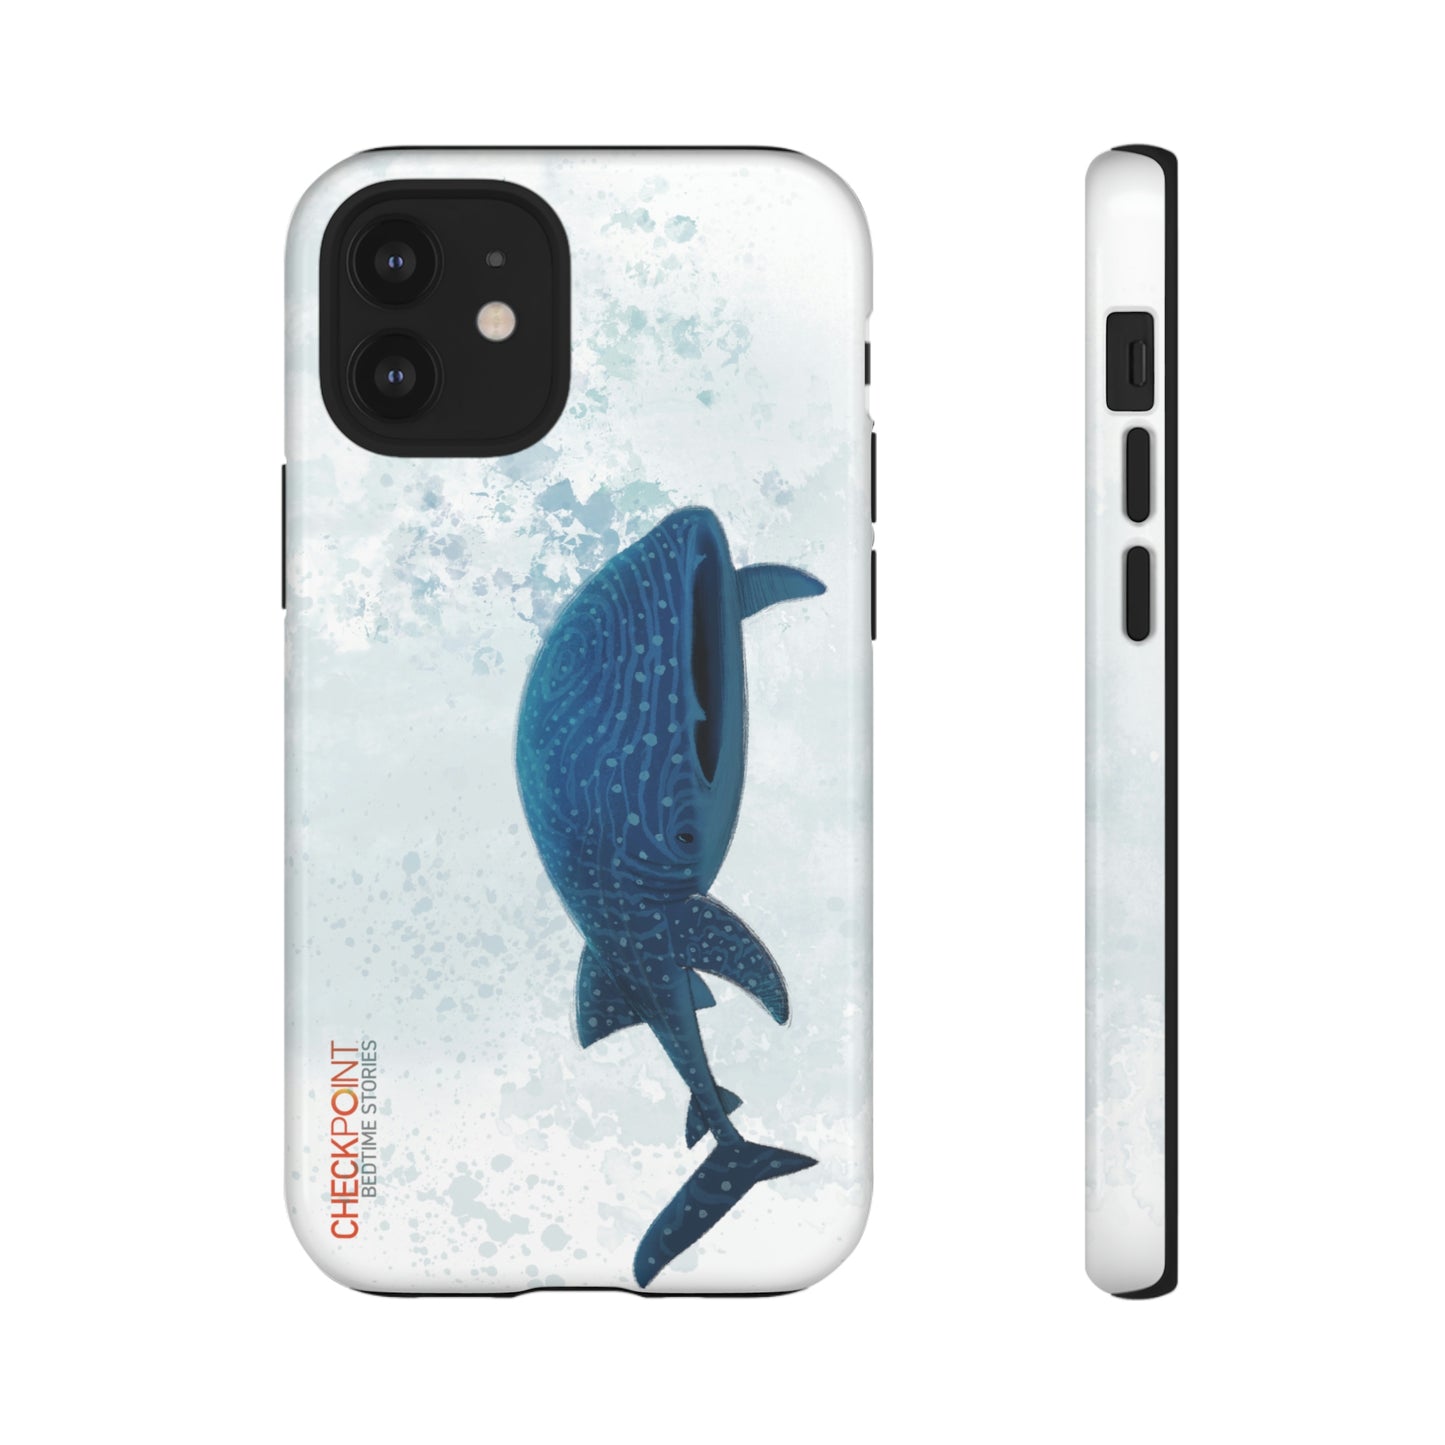 The Whale Shark Tough Phone Case